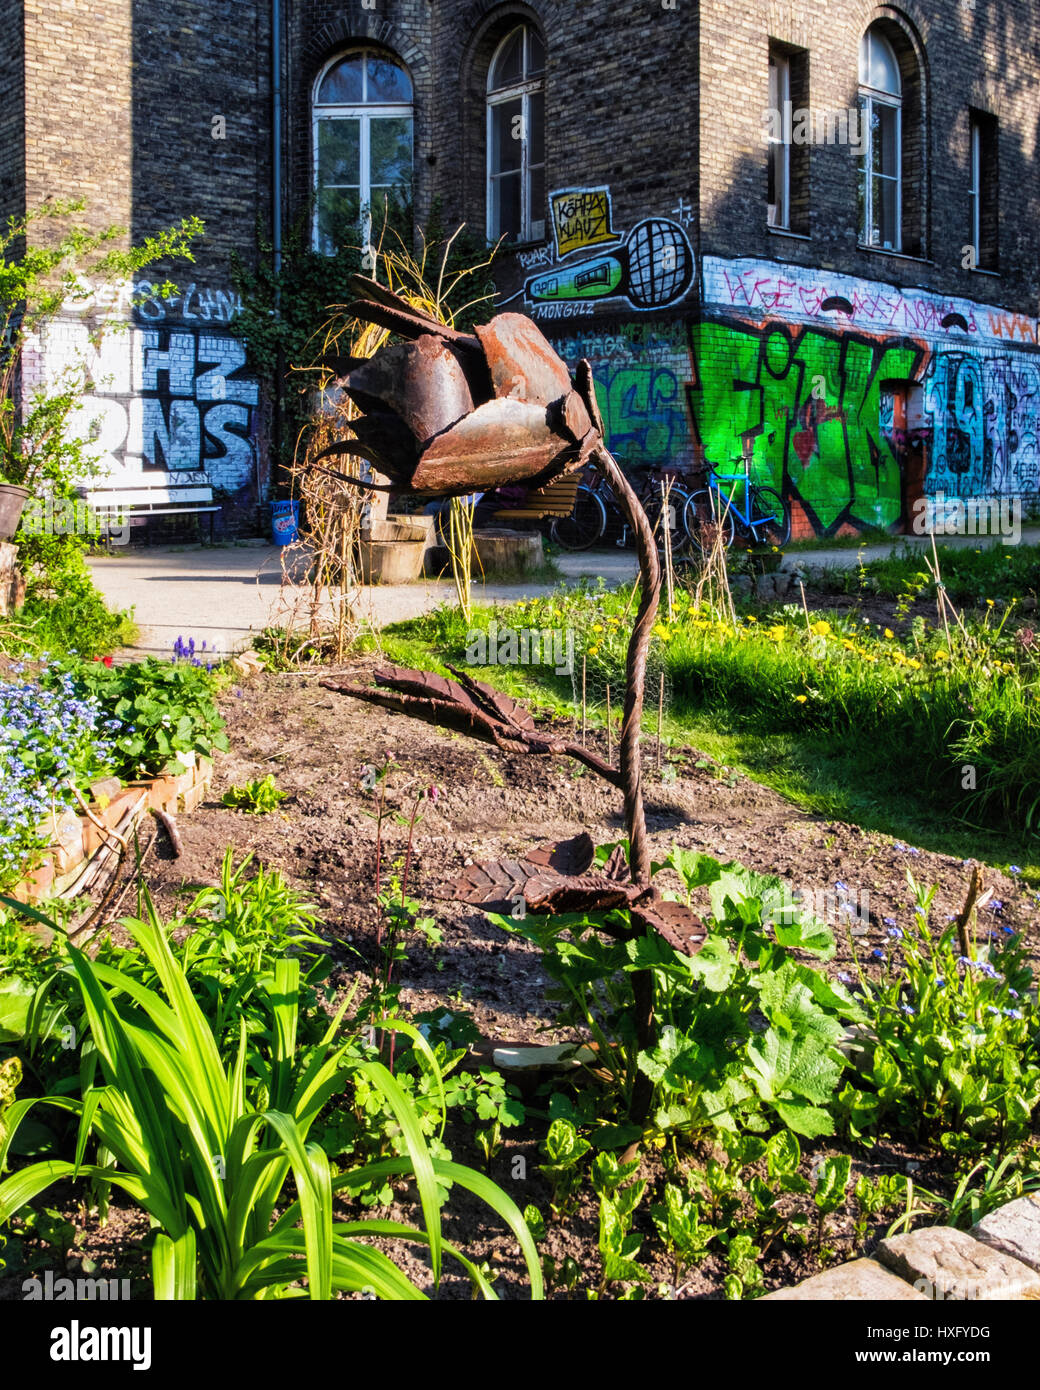 Berlino Kreuzberg. Il ton Steine giardino, comunale comunità urbane progetto giardinaggio accanto alla Georg von Rauch House. Foto Stock